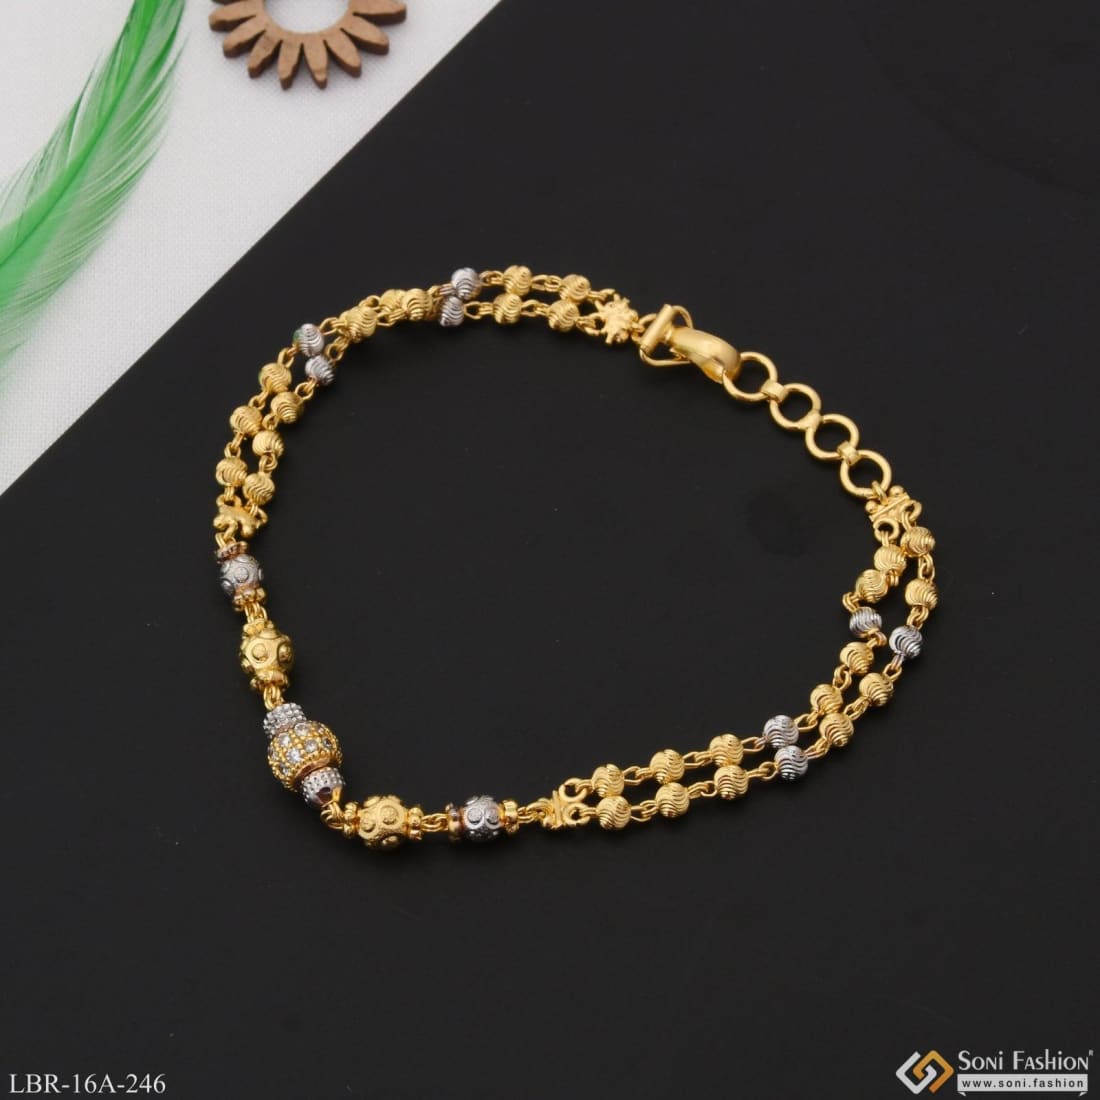 Gold & Diamond Bracelet Designs For Women - PC Chandra